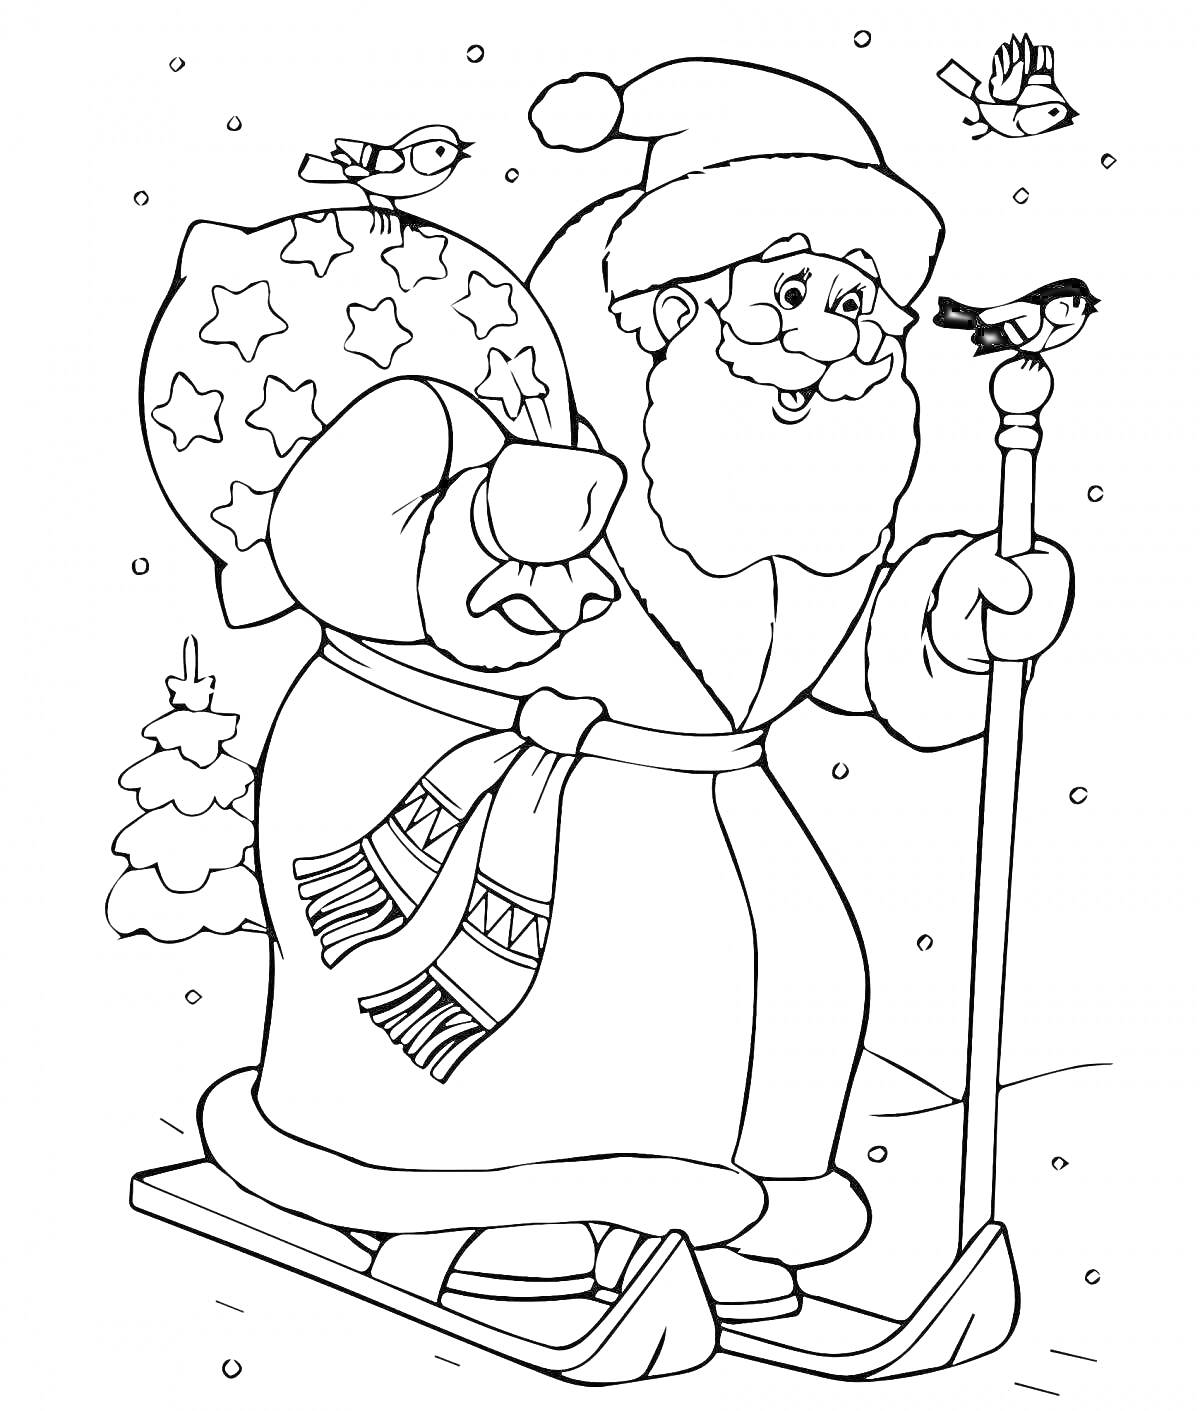 Раскраска Дед Мороз на лыжах с мешком подарков, в окружении птиц и снежных сугробов